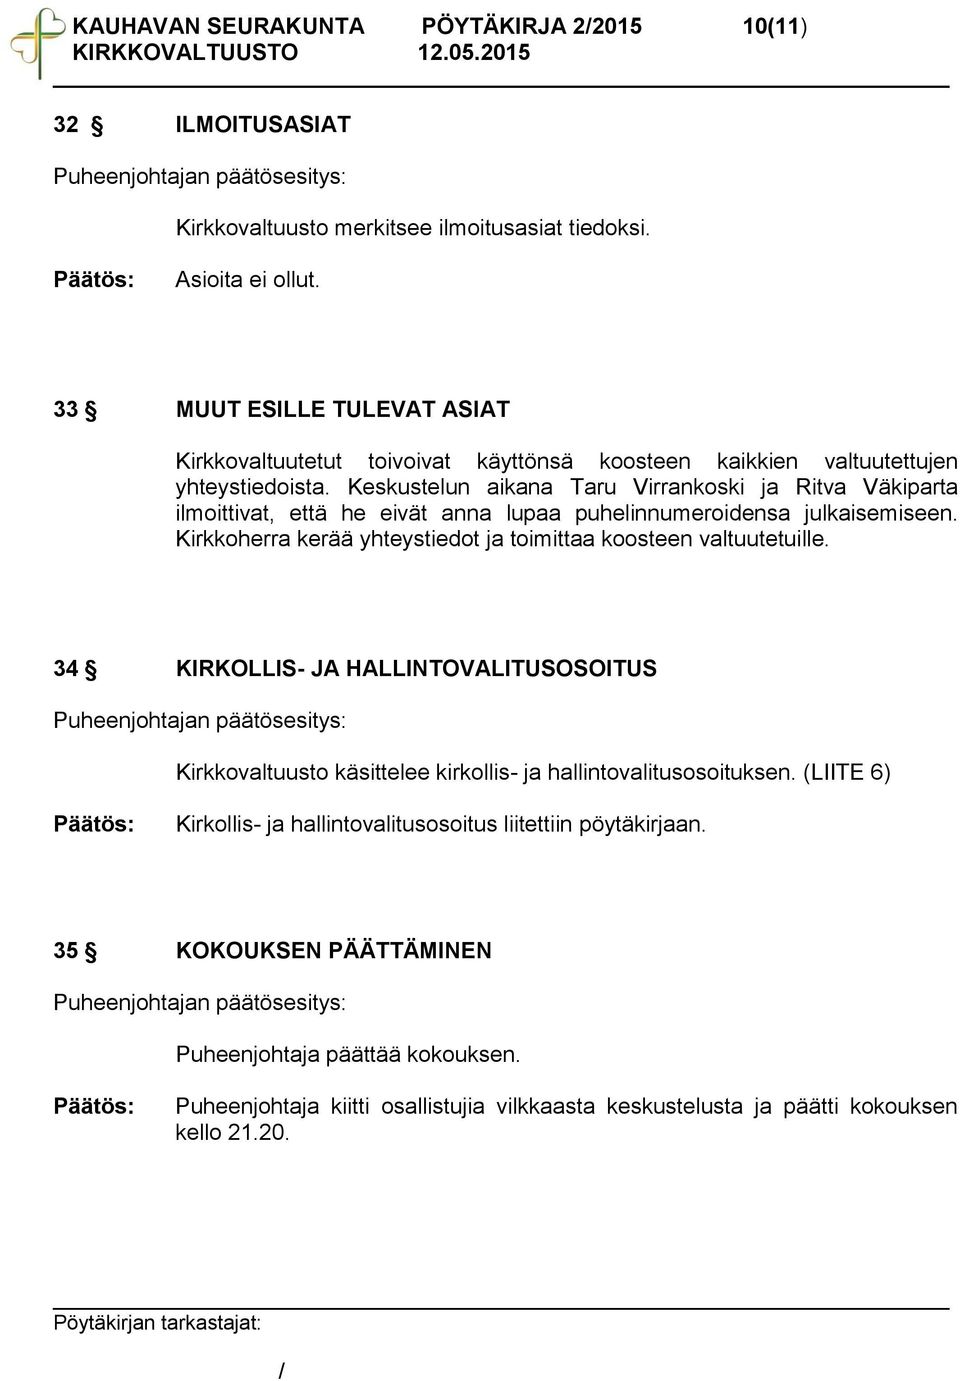 Keskustelun aikana Taru Virrankoski ja Ritva Väkiparta ilmoittivat, että he eivät anna lupaa puhelinnumeroidensa julkaisemiseen.